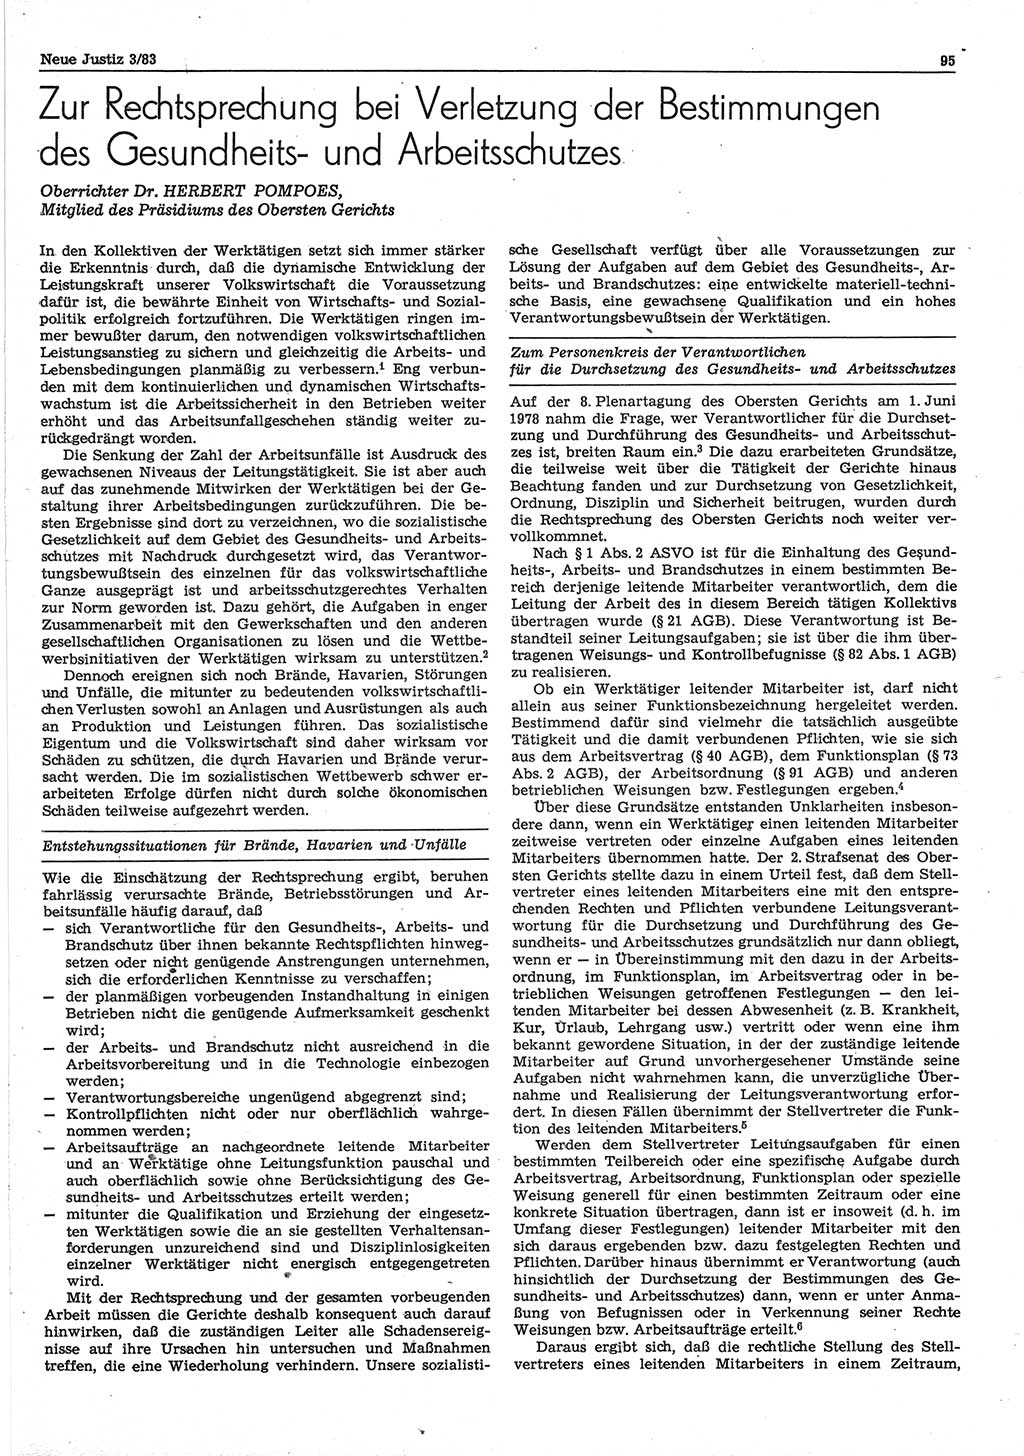 Neue Justiz (NJ), Zeitschrift für sozialistisches Recht und Gesetzlichkeit [Deutsche Demokratische Republik (DDR)], 37. Jahrgang 1983, Seite 95 (NJ DDR 1983, S. 95)